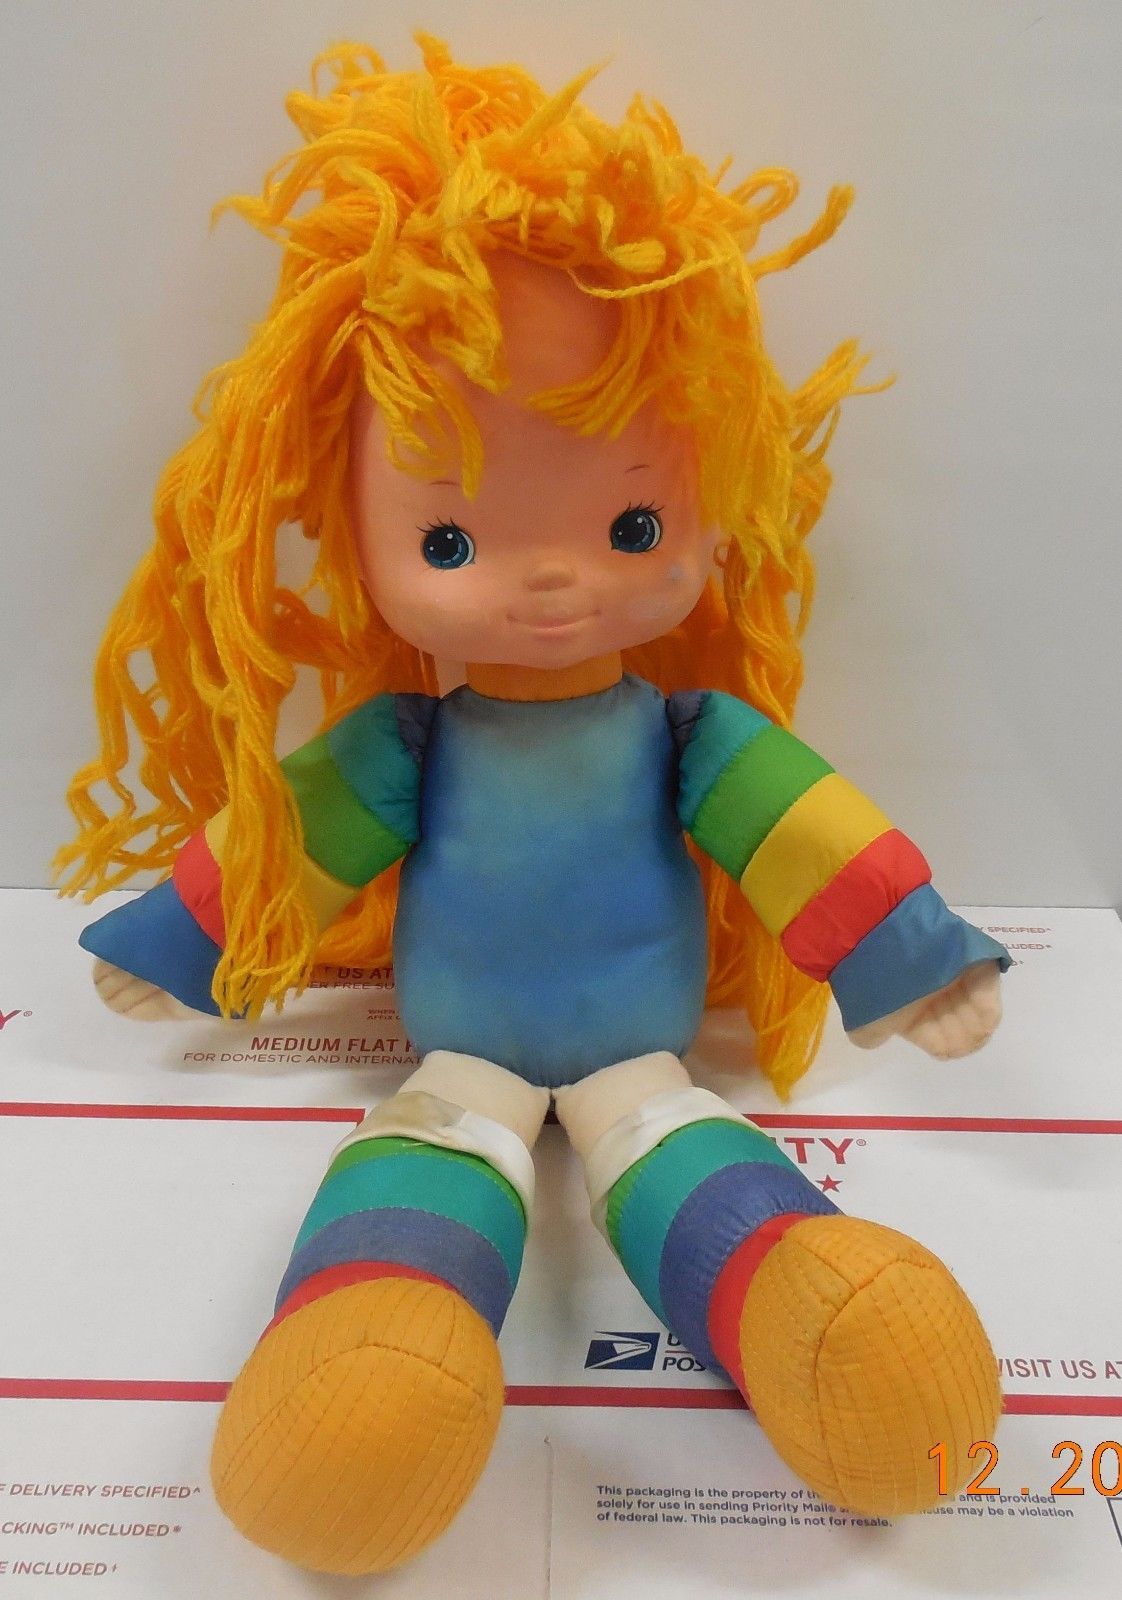 Vintage Hallmark 1983 Rainbow Brite Plush Sprite Twink Friend Toy Plush Stars